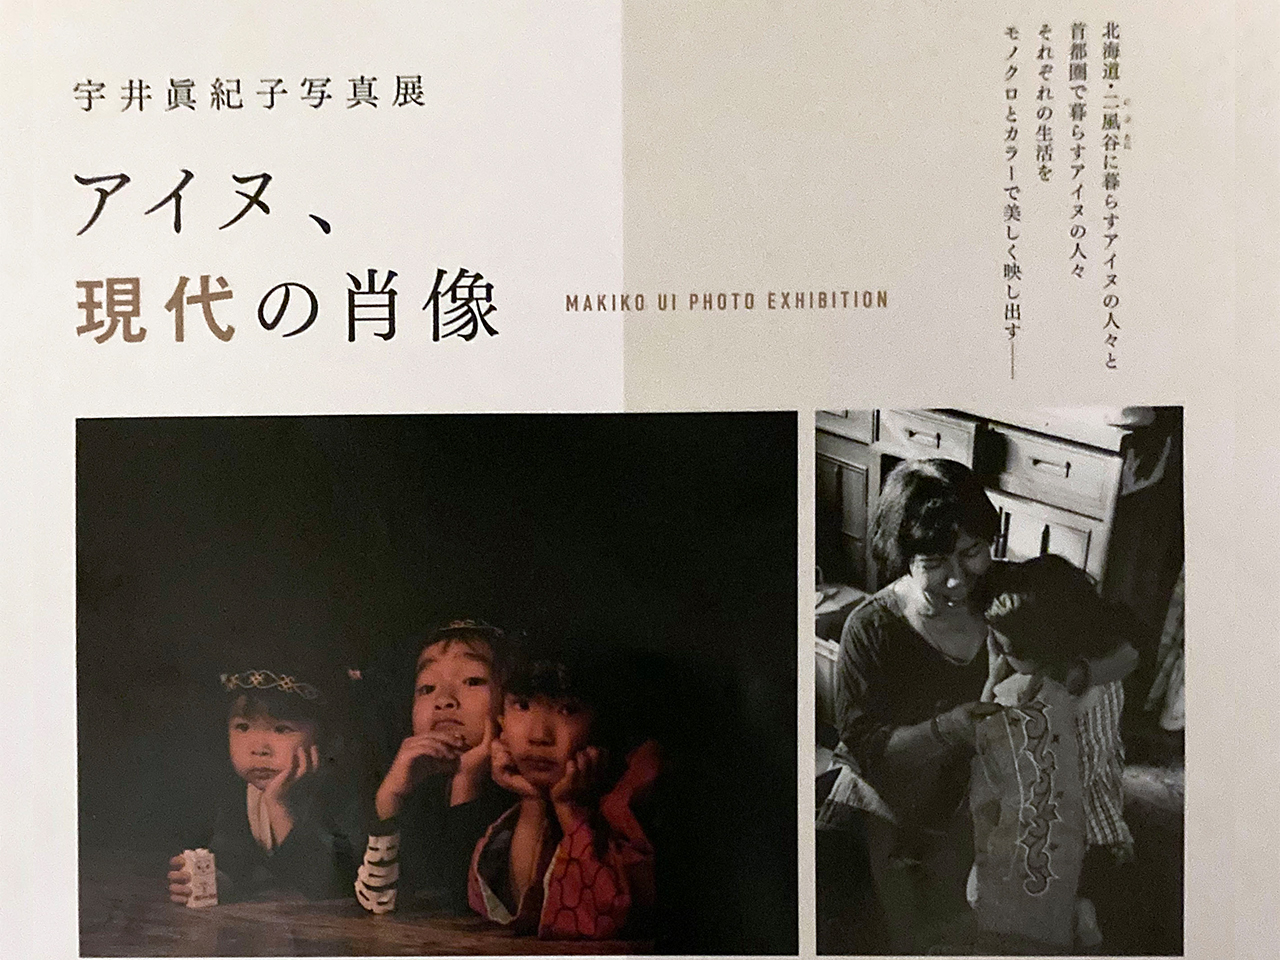 宇井真紀子写真展「アイヌ、現代の肖像」が2月16日よりベルブ永山で開催されます